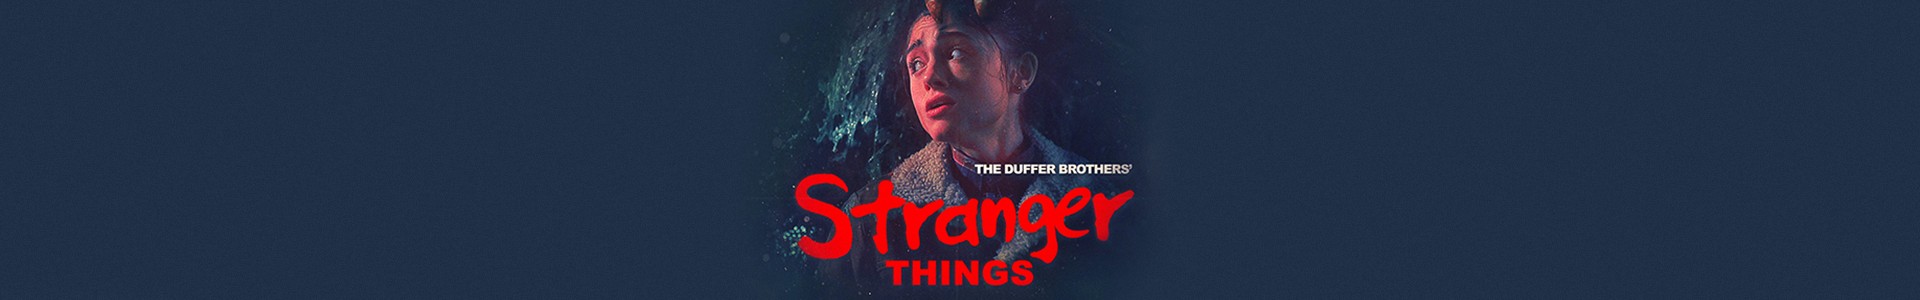 7 pôsteres de Stranger Things inspirados nos filmes de terror dos anos 70 e 80